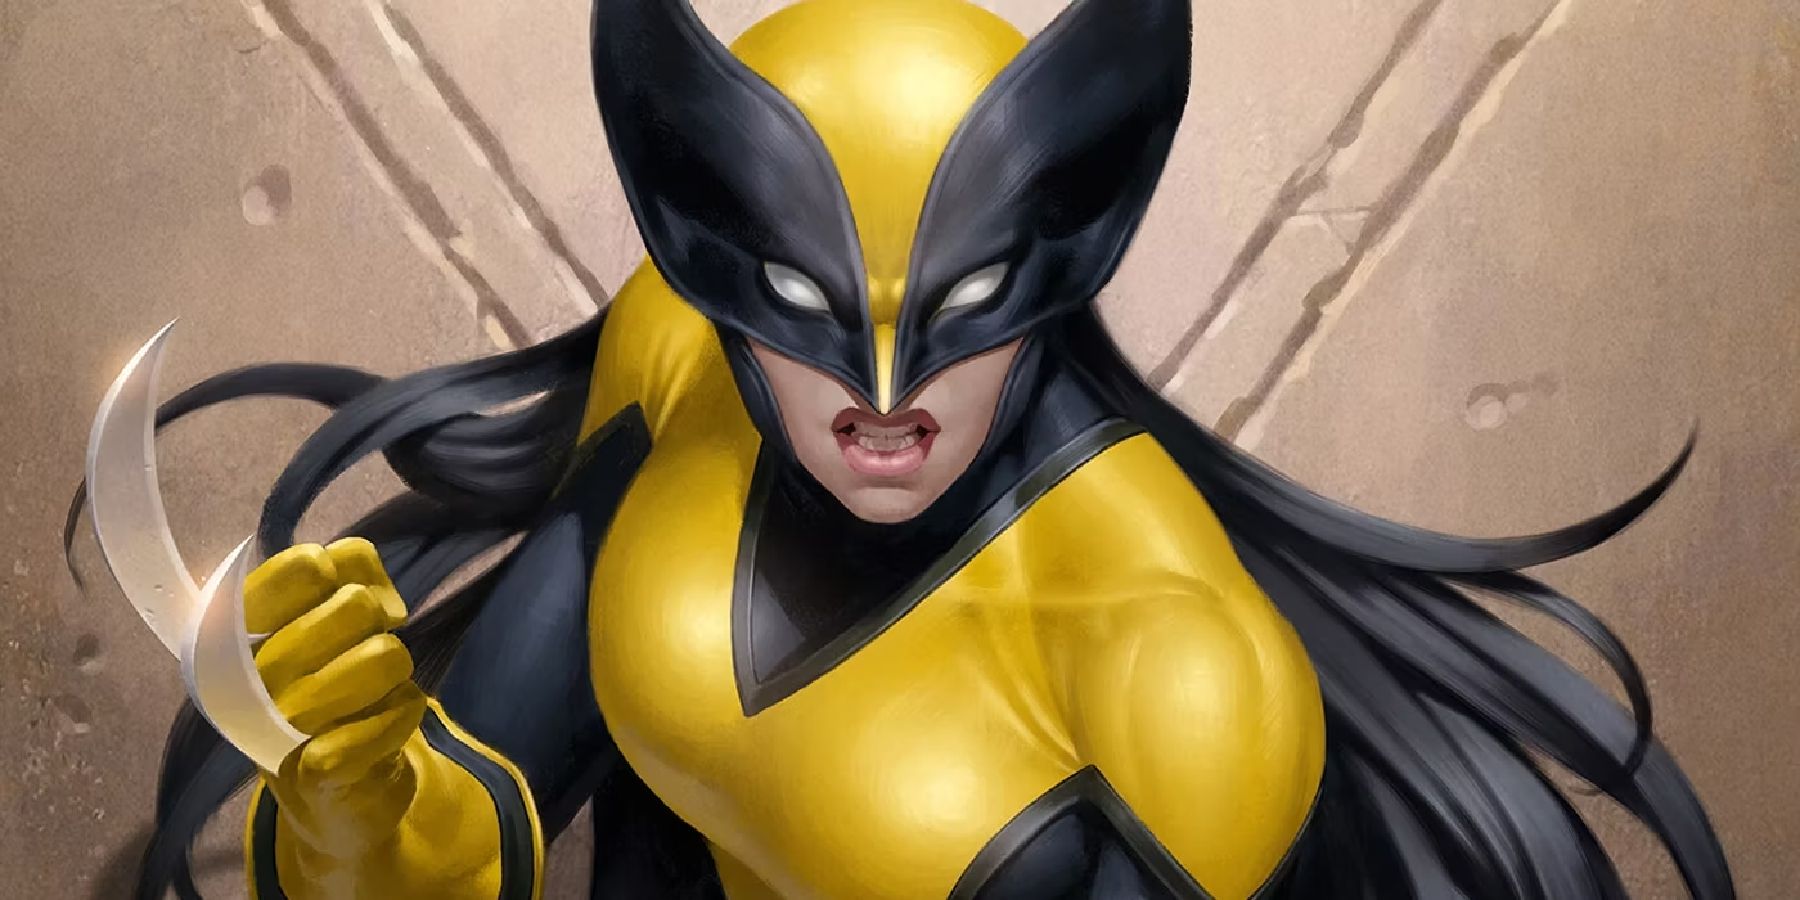 X-23 is Wolverine